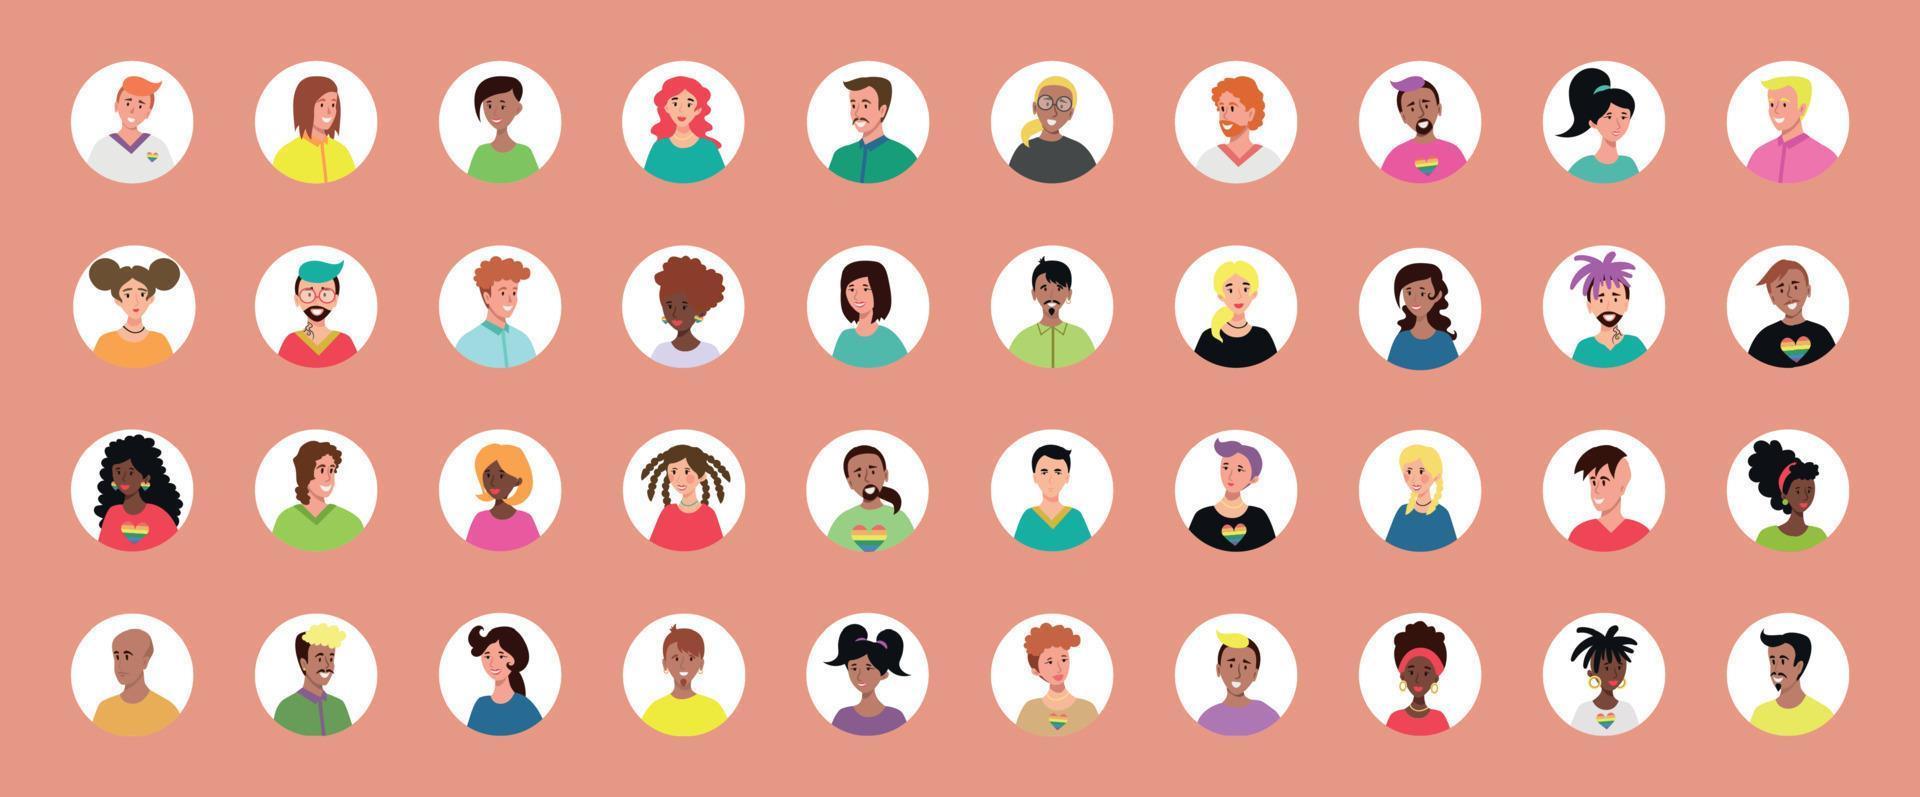 conjunto de 40 avatares circulados com rostos de jovens. imagem de diferentes raças e nacionalidades, mulheres e homens. conjunto de ícones de perfil de usuário. emblemas redondos com pessoas felizes - vetor